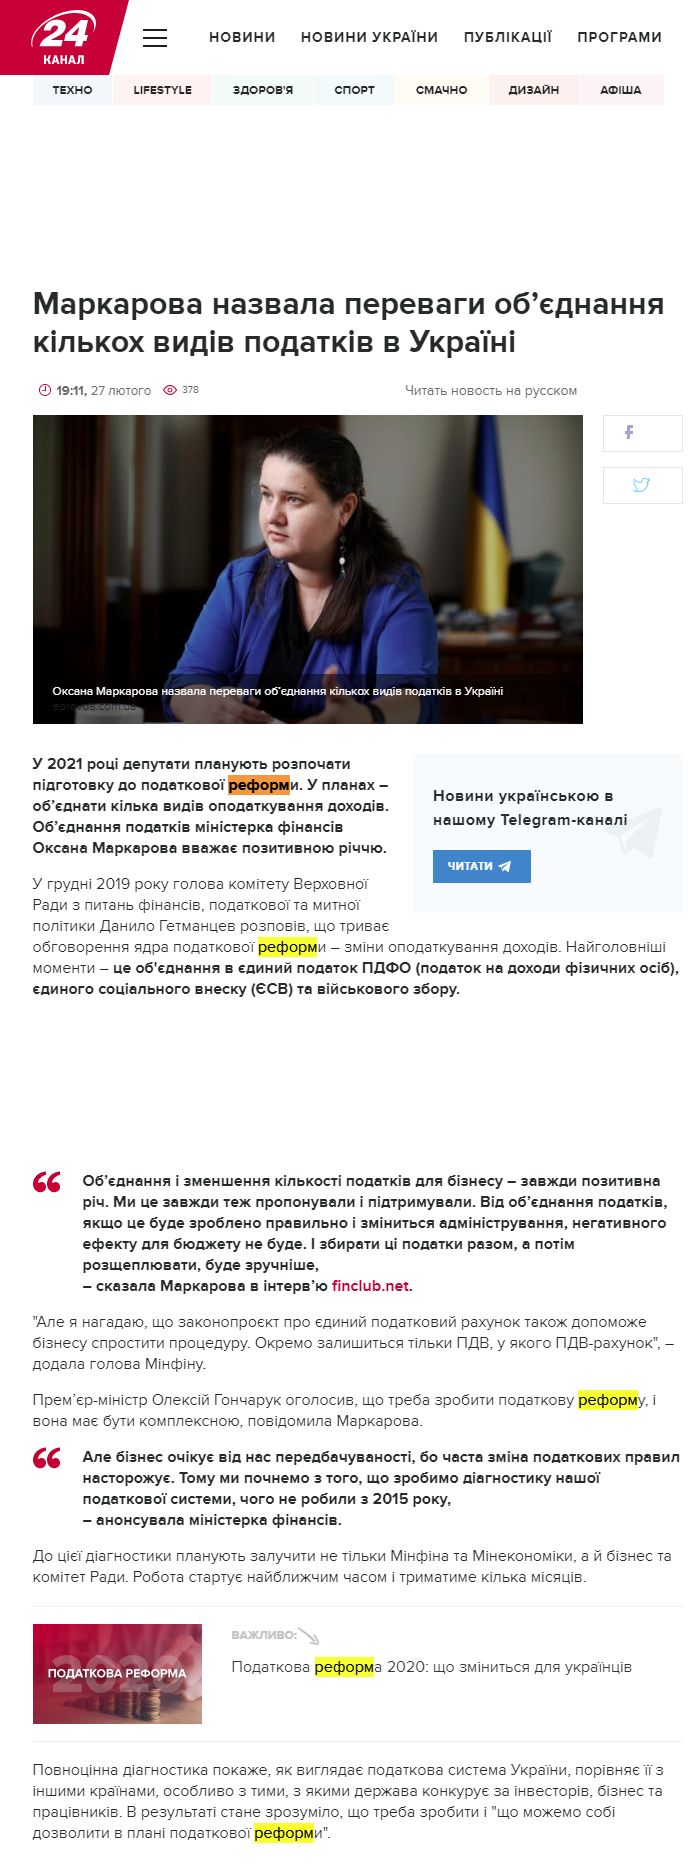 https://24tv.ua/obyednannya_podatkiv_v_ukrayini___markarova_nazvala_perevagi_n1288876